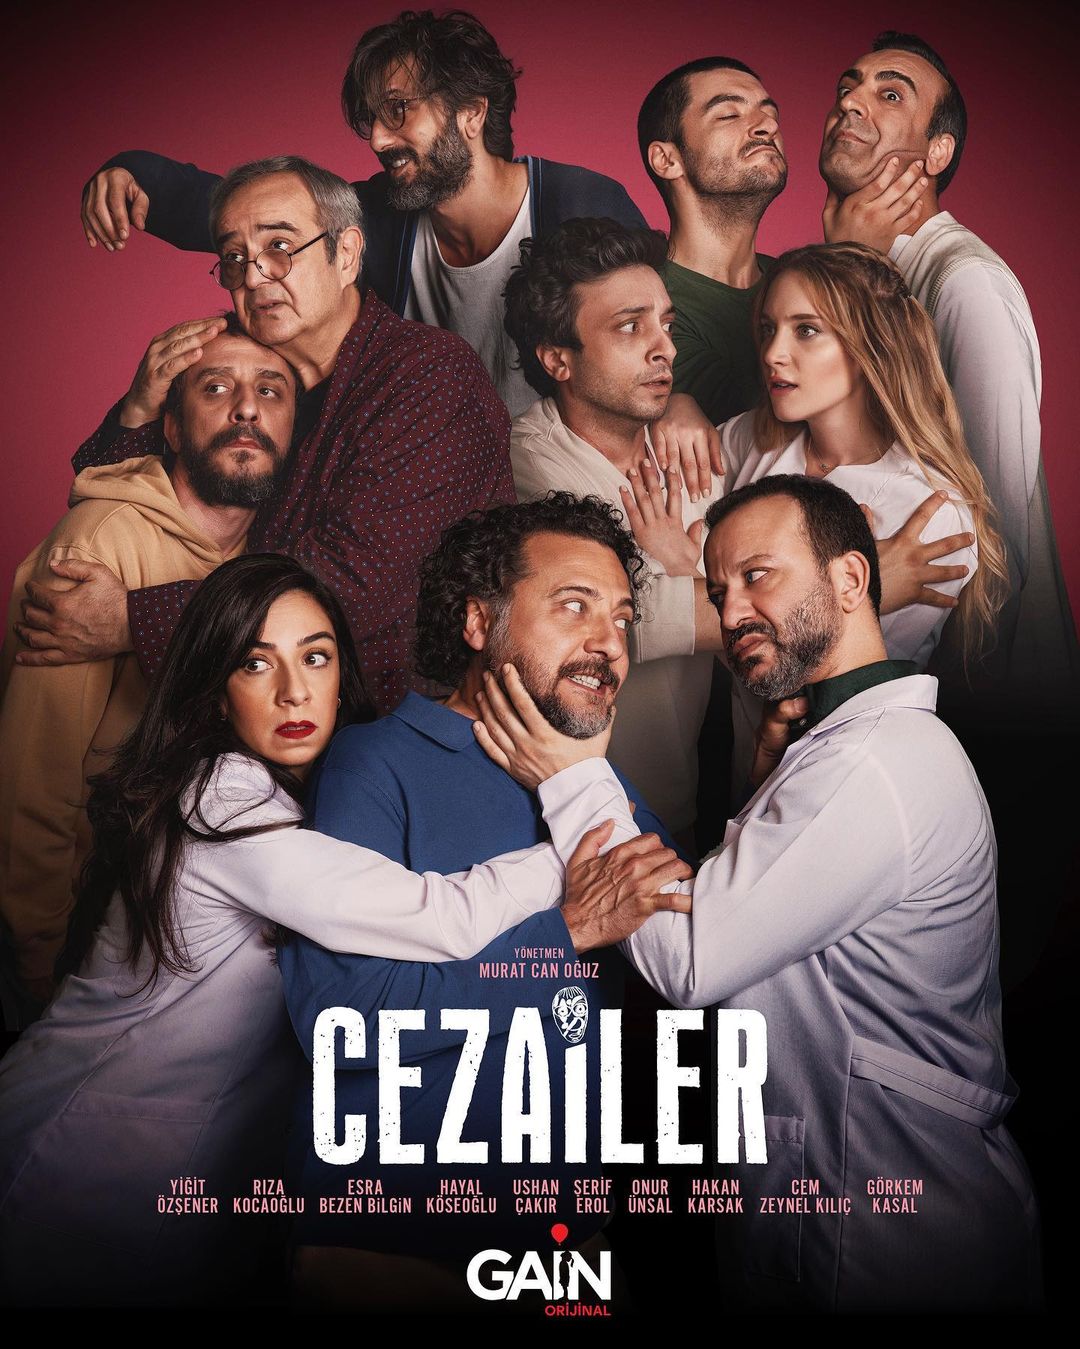 TV ratings for Cezailer in Russia. Gain TV series